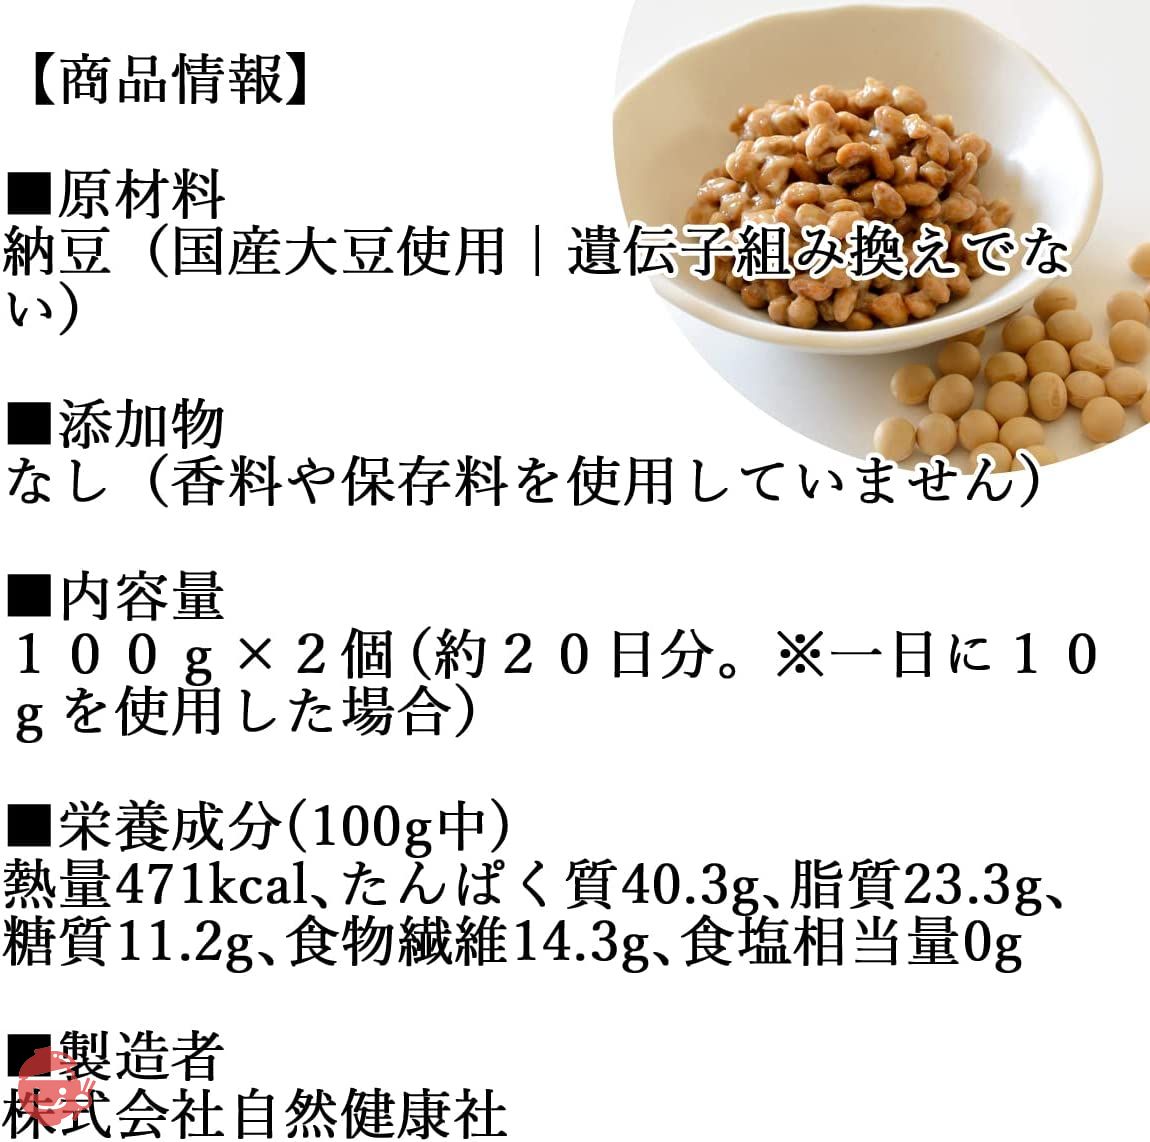 Shizenkenkosha Dried Natto 100g x 2 Dried Natto Hikiwari No